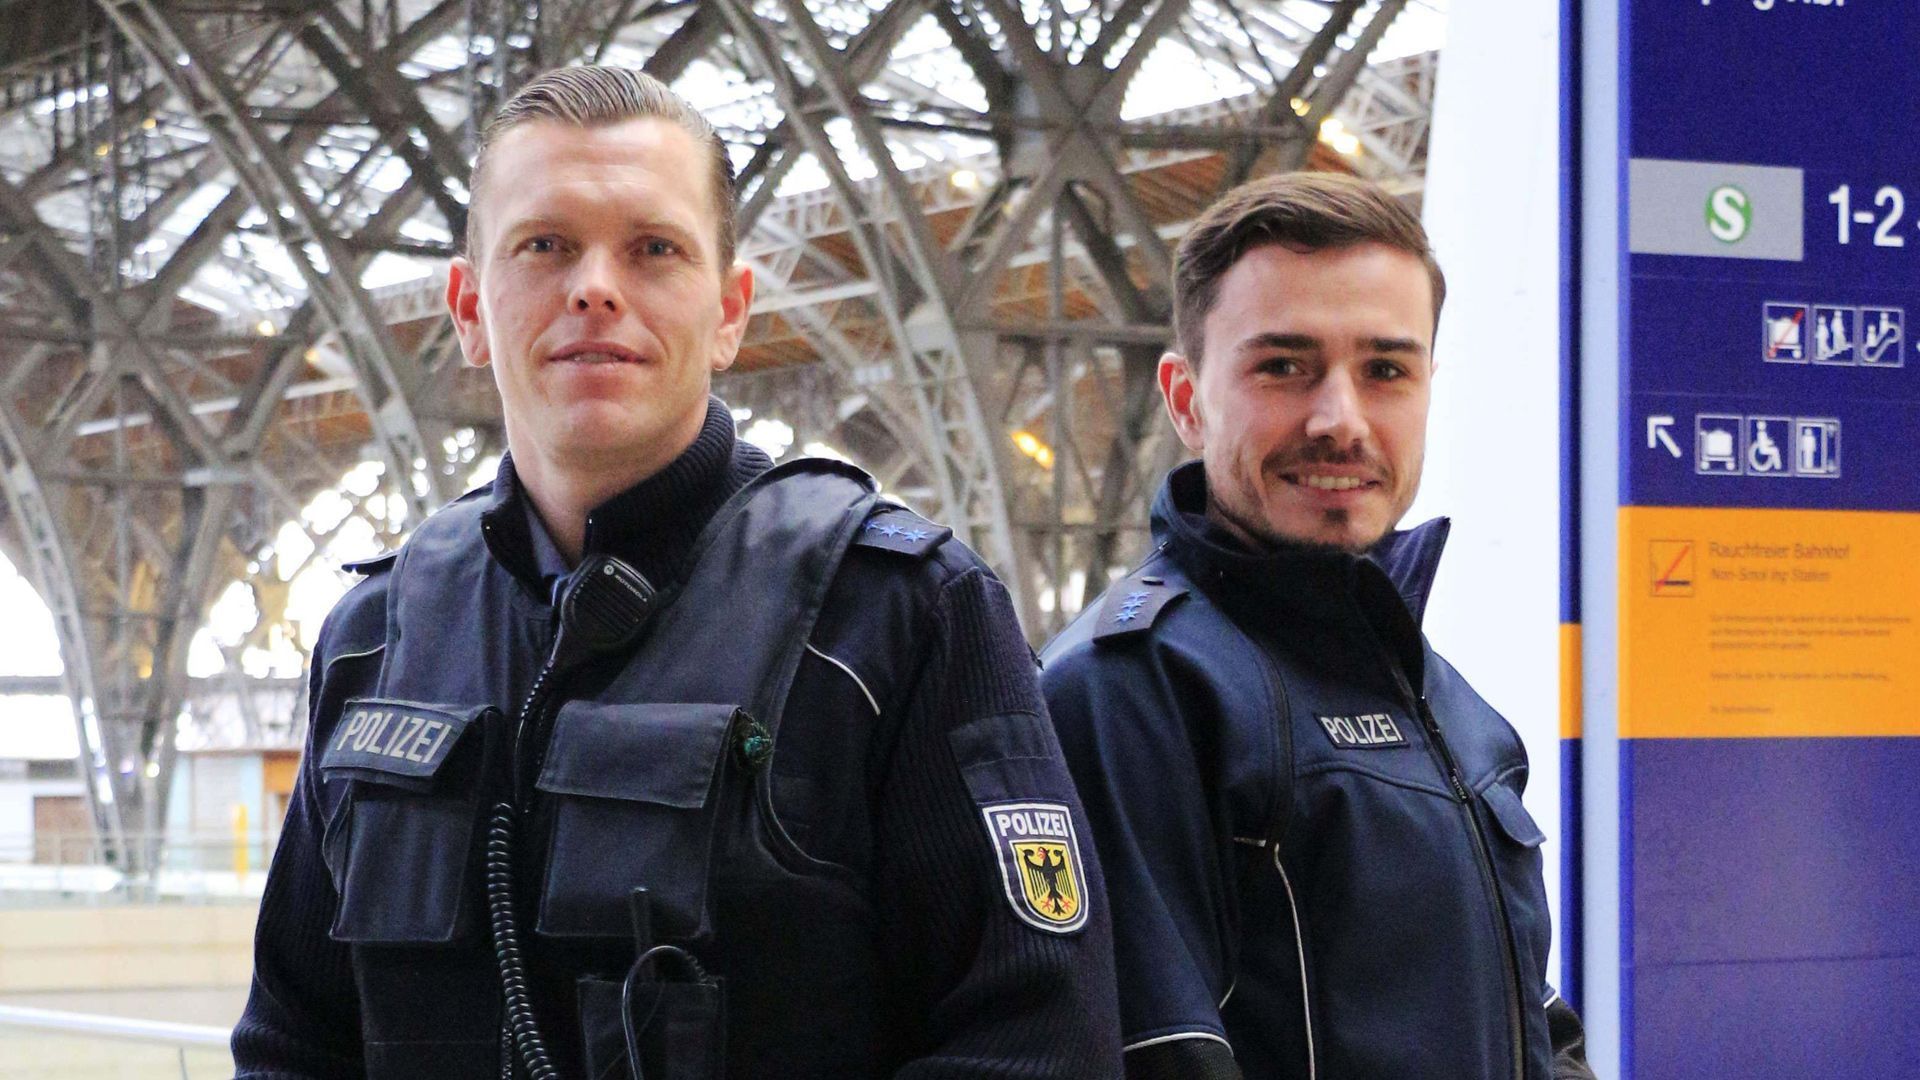 Thema u. a.: Videochat während der Fahrt - Polizei Rotenburg